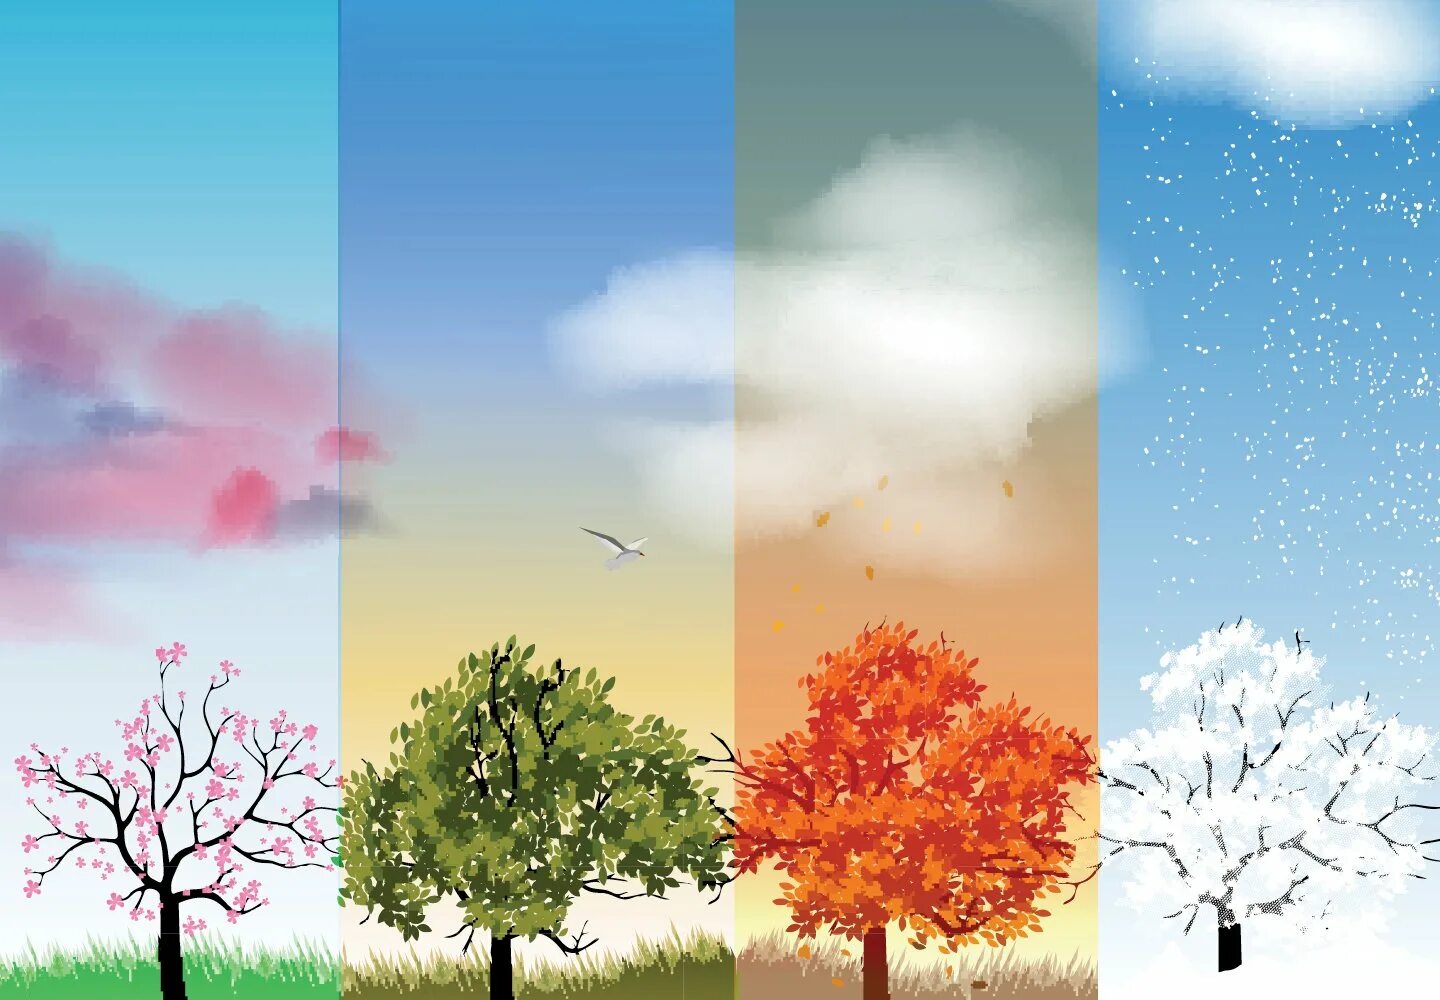 Ссылки на времена года. Зима,Весна,лето,осень. Пейзаж по временам года. Дерево четыре времени года. Дерево в разные времена года.